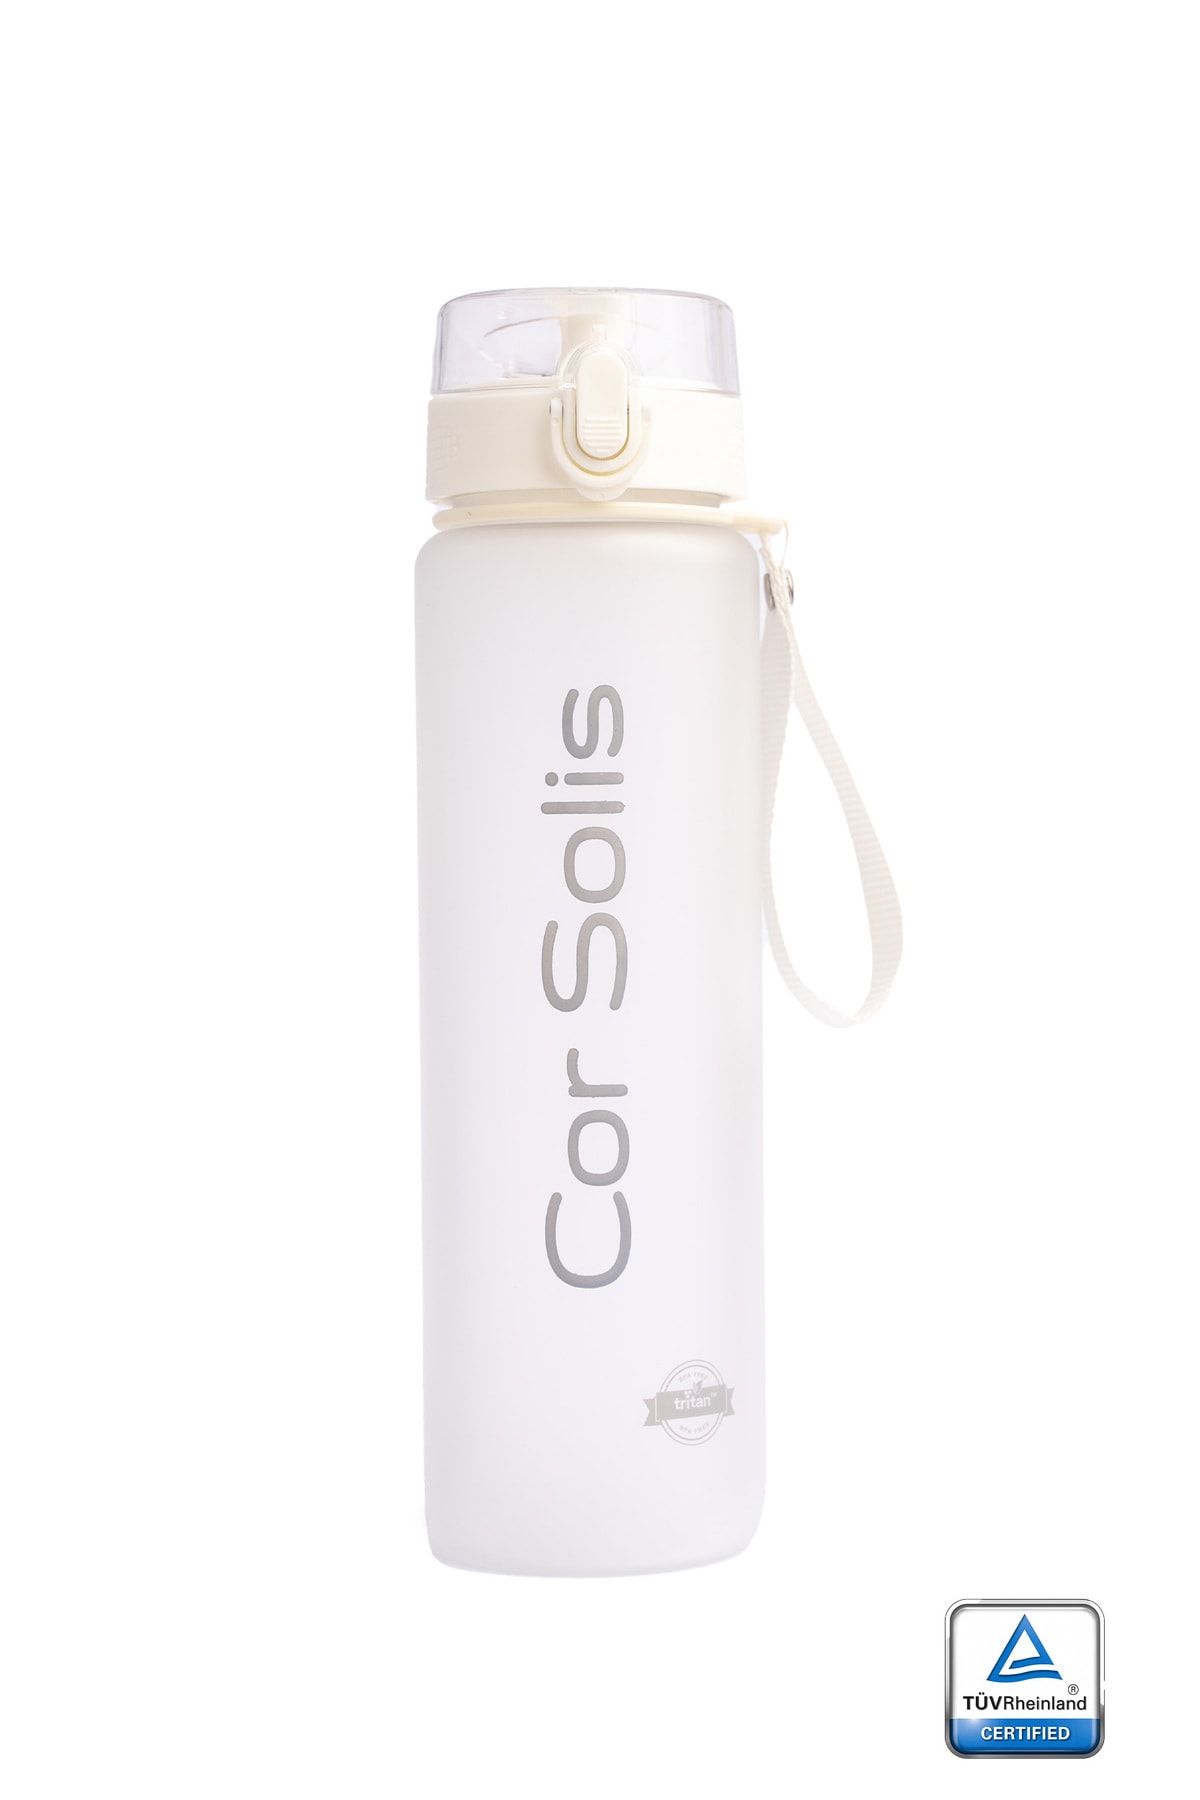 Cor Solis Suluk Matara Tritan Detoks 1050ml, Sağlıklı, Koku ve Su Akıtma Yapmaz, FDA ve TUV Onaylı BPA İçermez